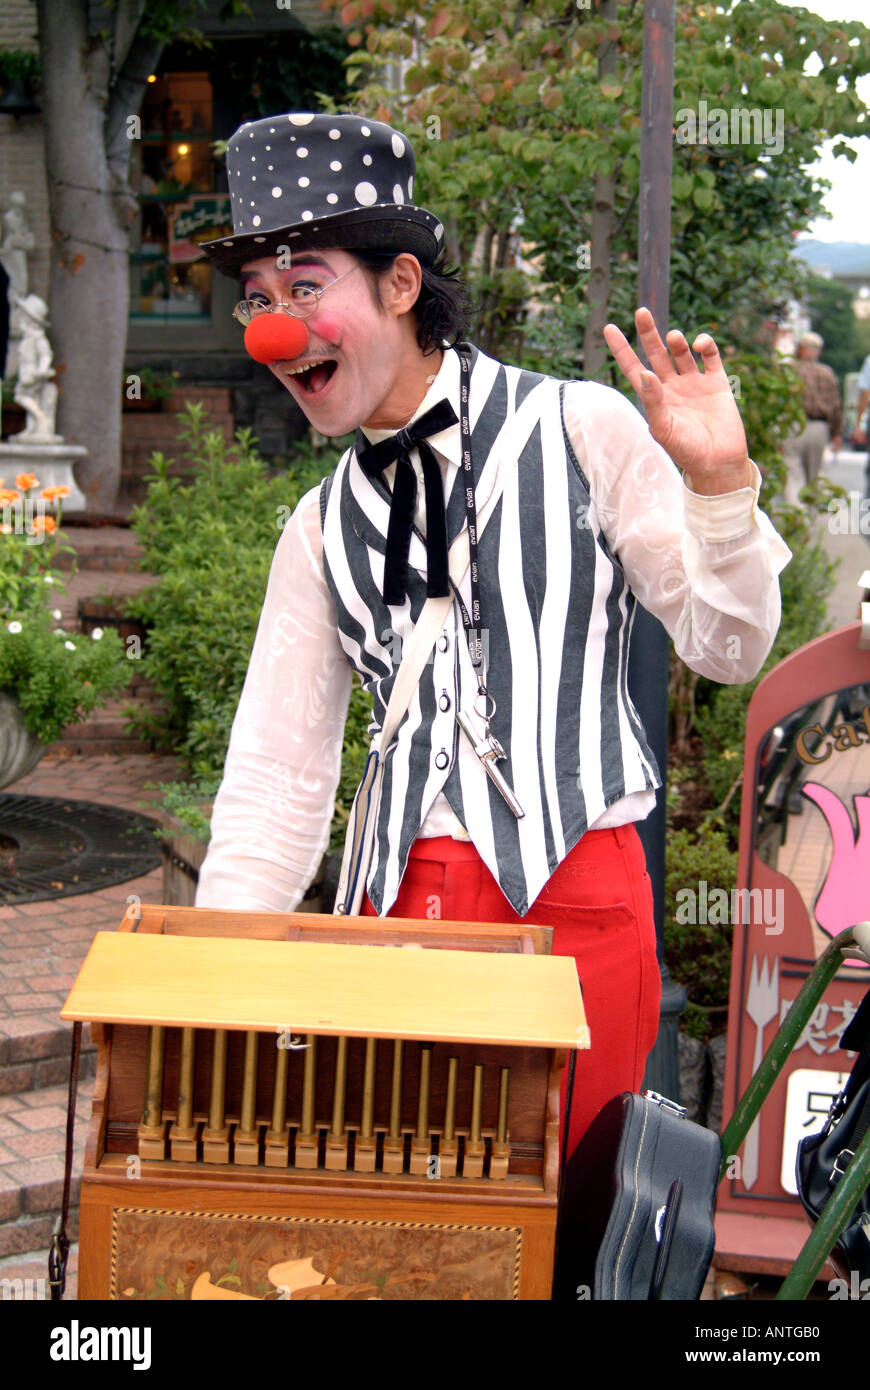 Andy the clown at Arashiyama Kyoto Japan Stock Photo